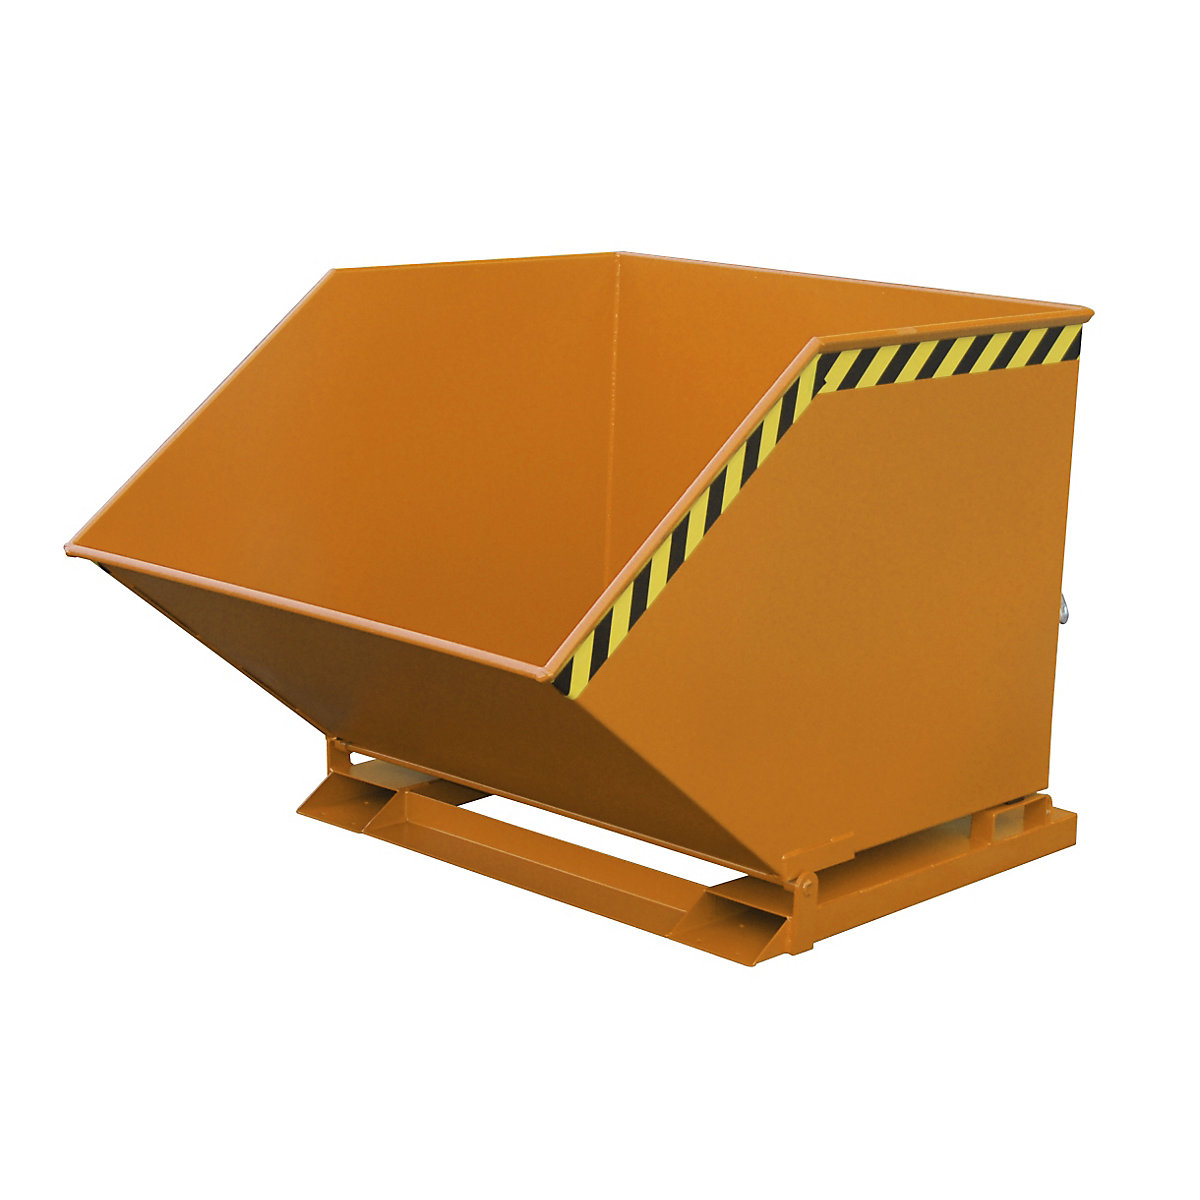 Contenitore ribaltabile con meccanismo di chiusura – eurokraft pro, forma scatolare, capacità 1 m³, arancione RAL 2000-9